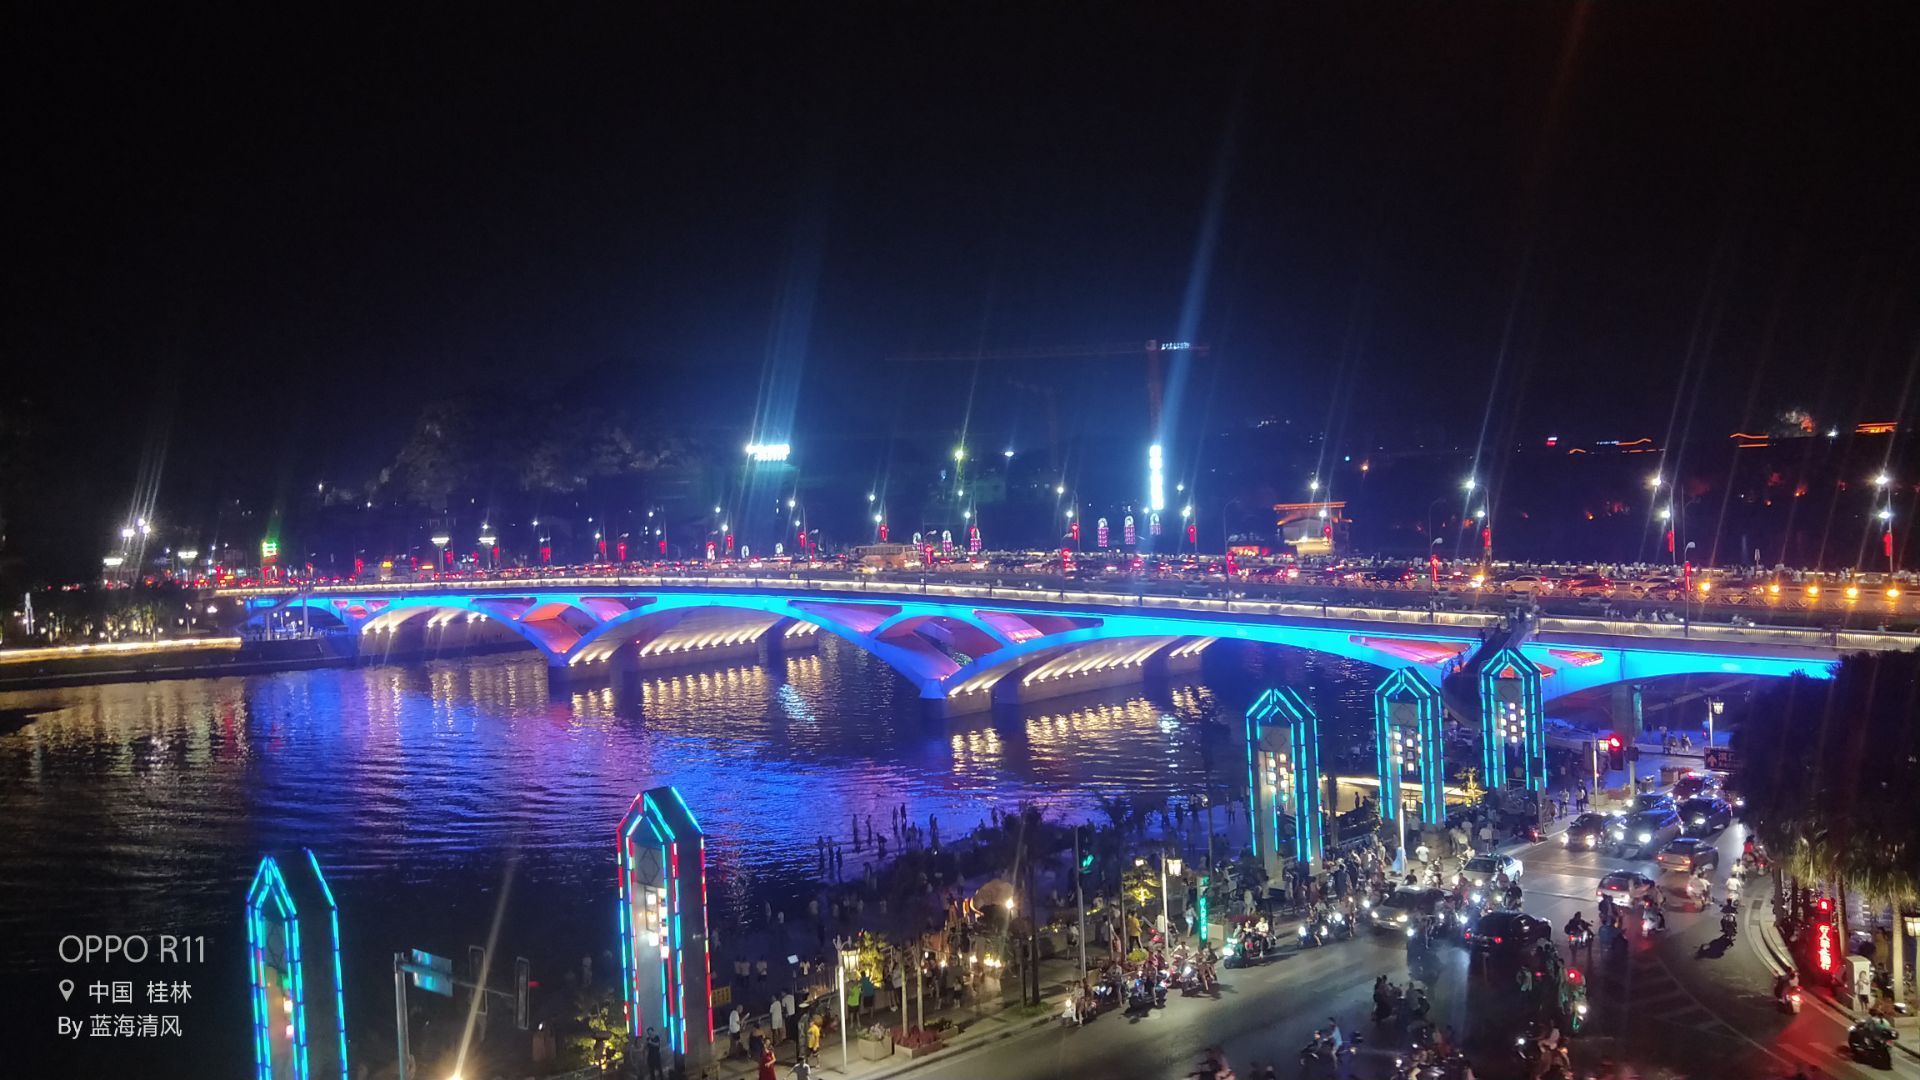 【携程攻略】桂林两江四湖景点,桂林市内夜晚景点必游项目。景色还可以。晚上没那么热，吹吹江风挺舒…